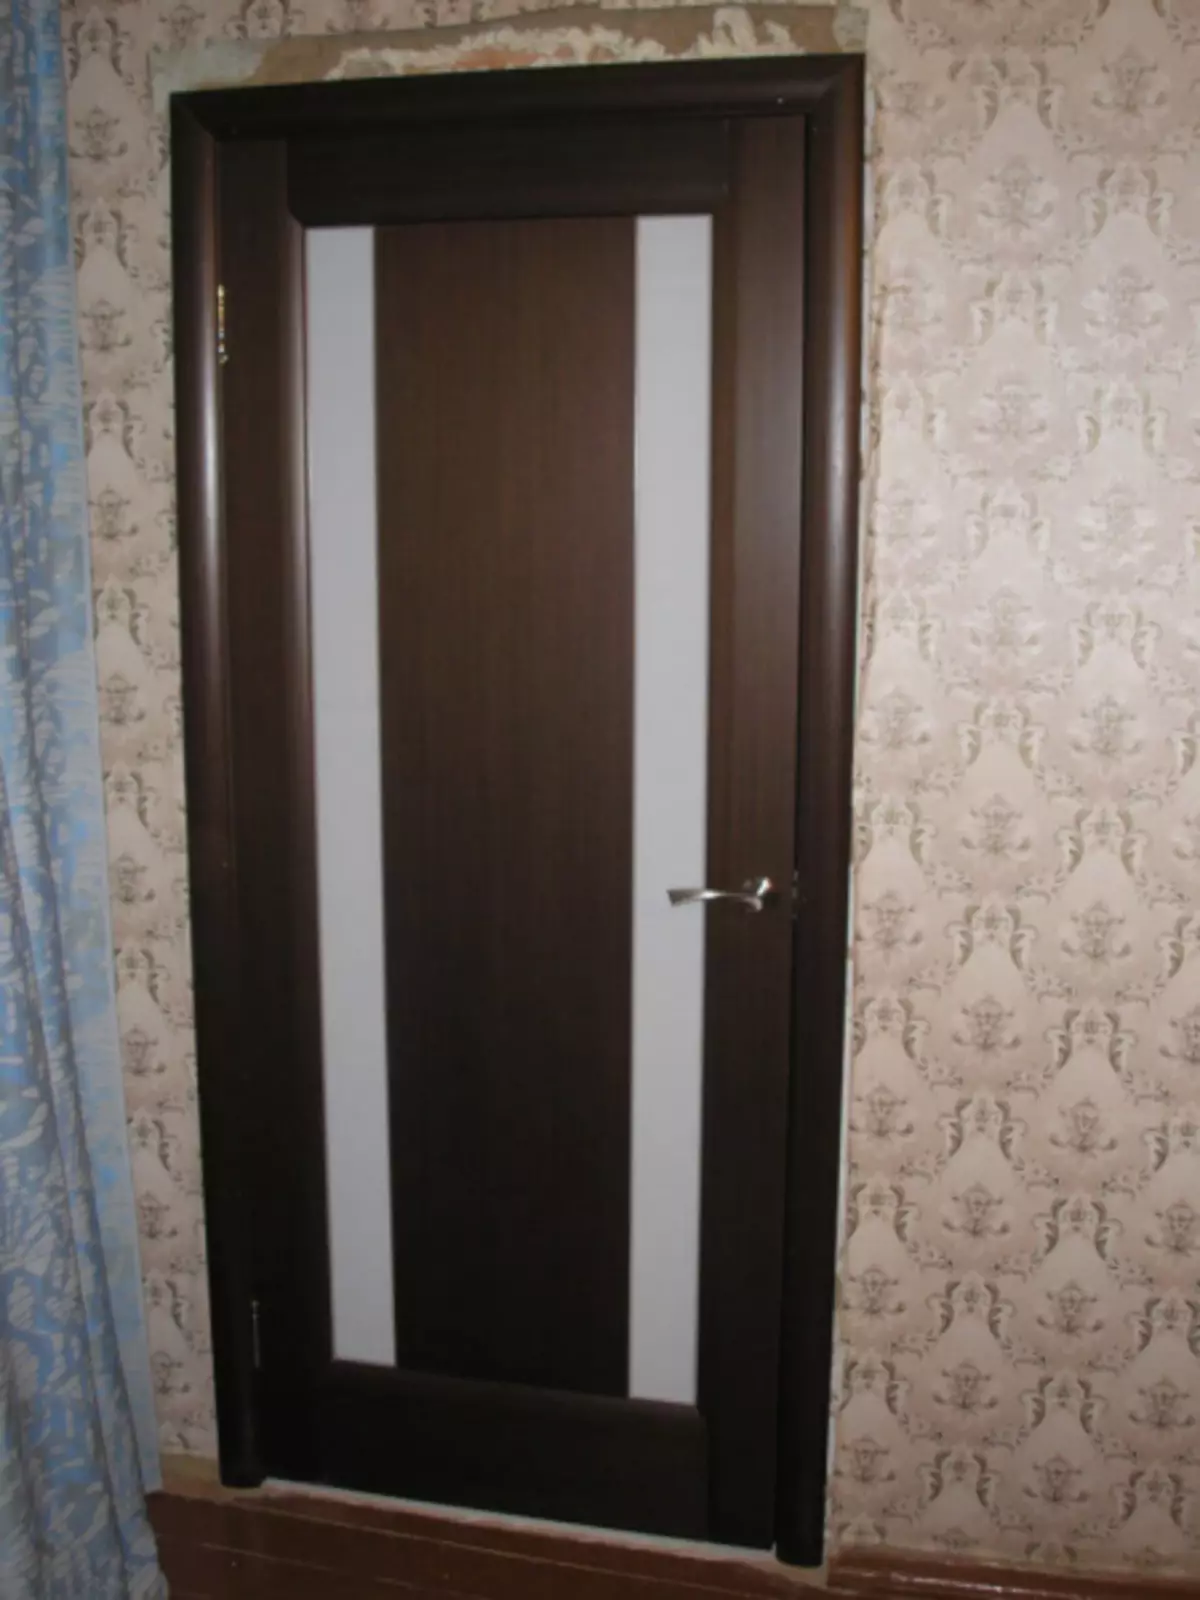 Хаалга, нуман хаалганы MDF хавтангийн давуу талууд